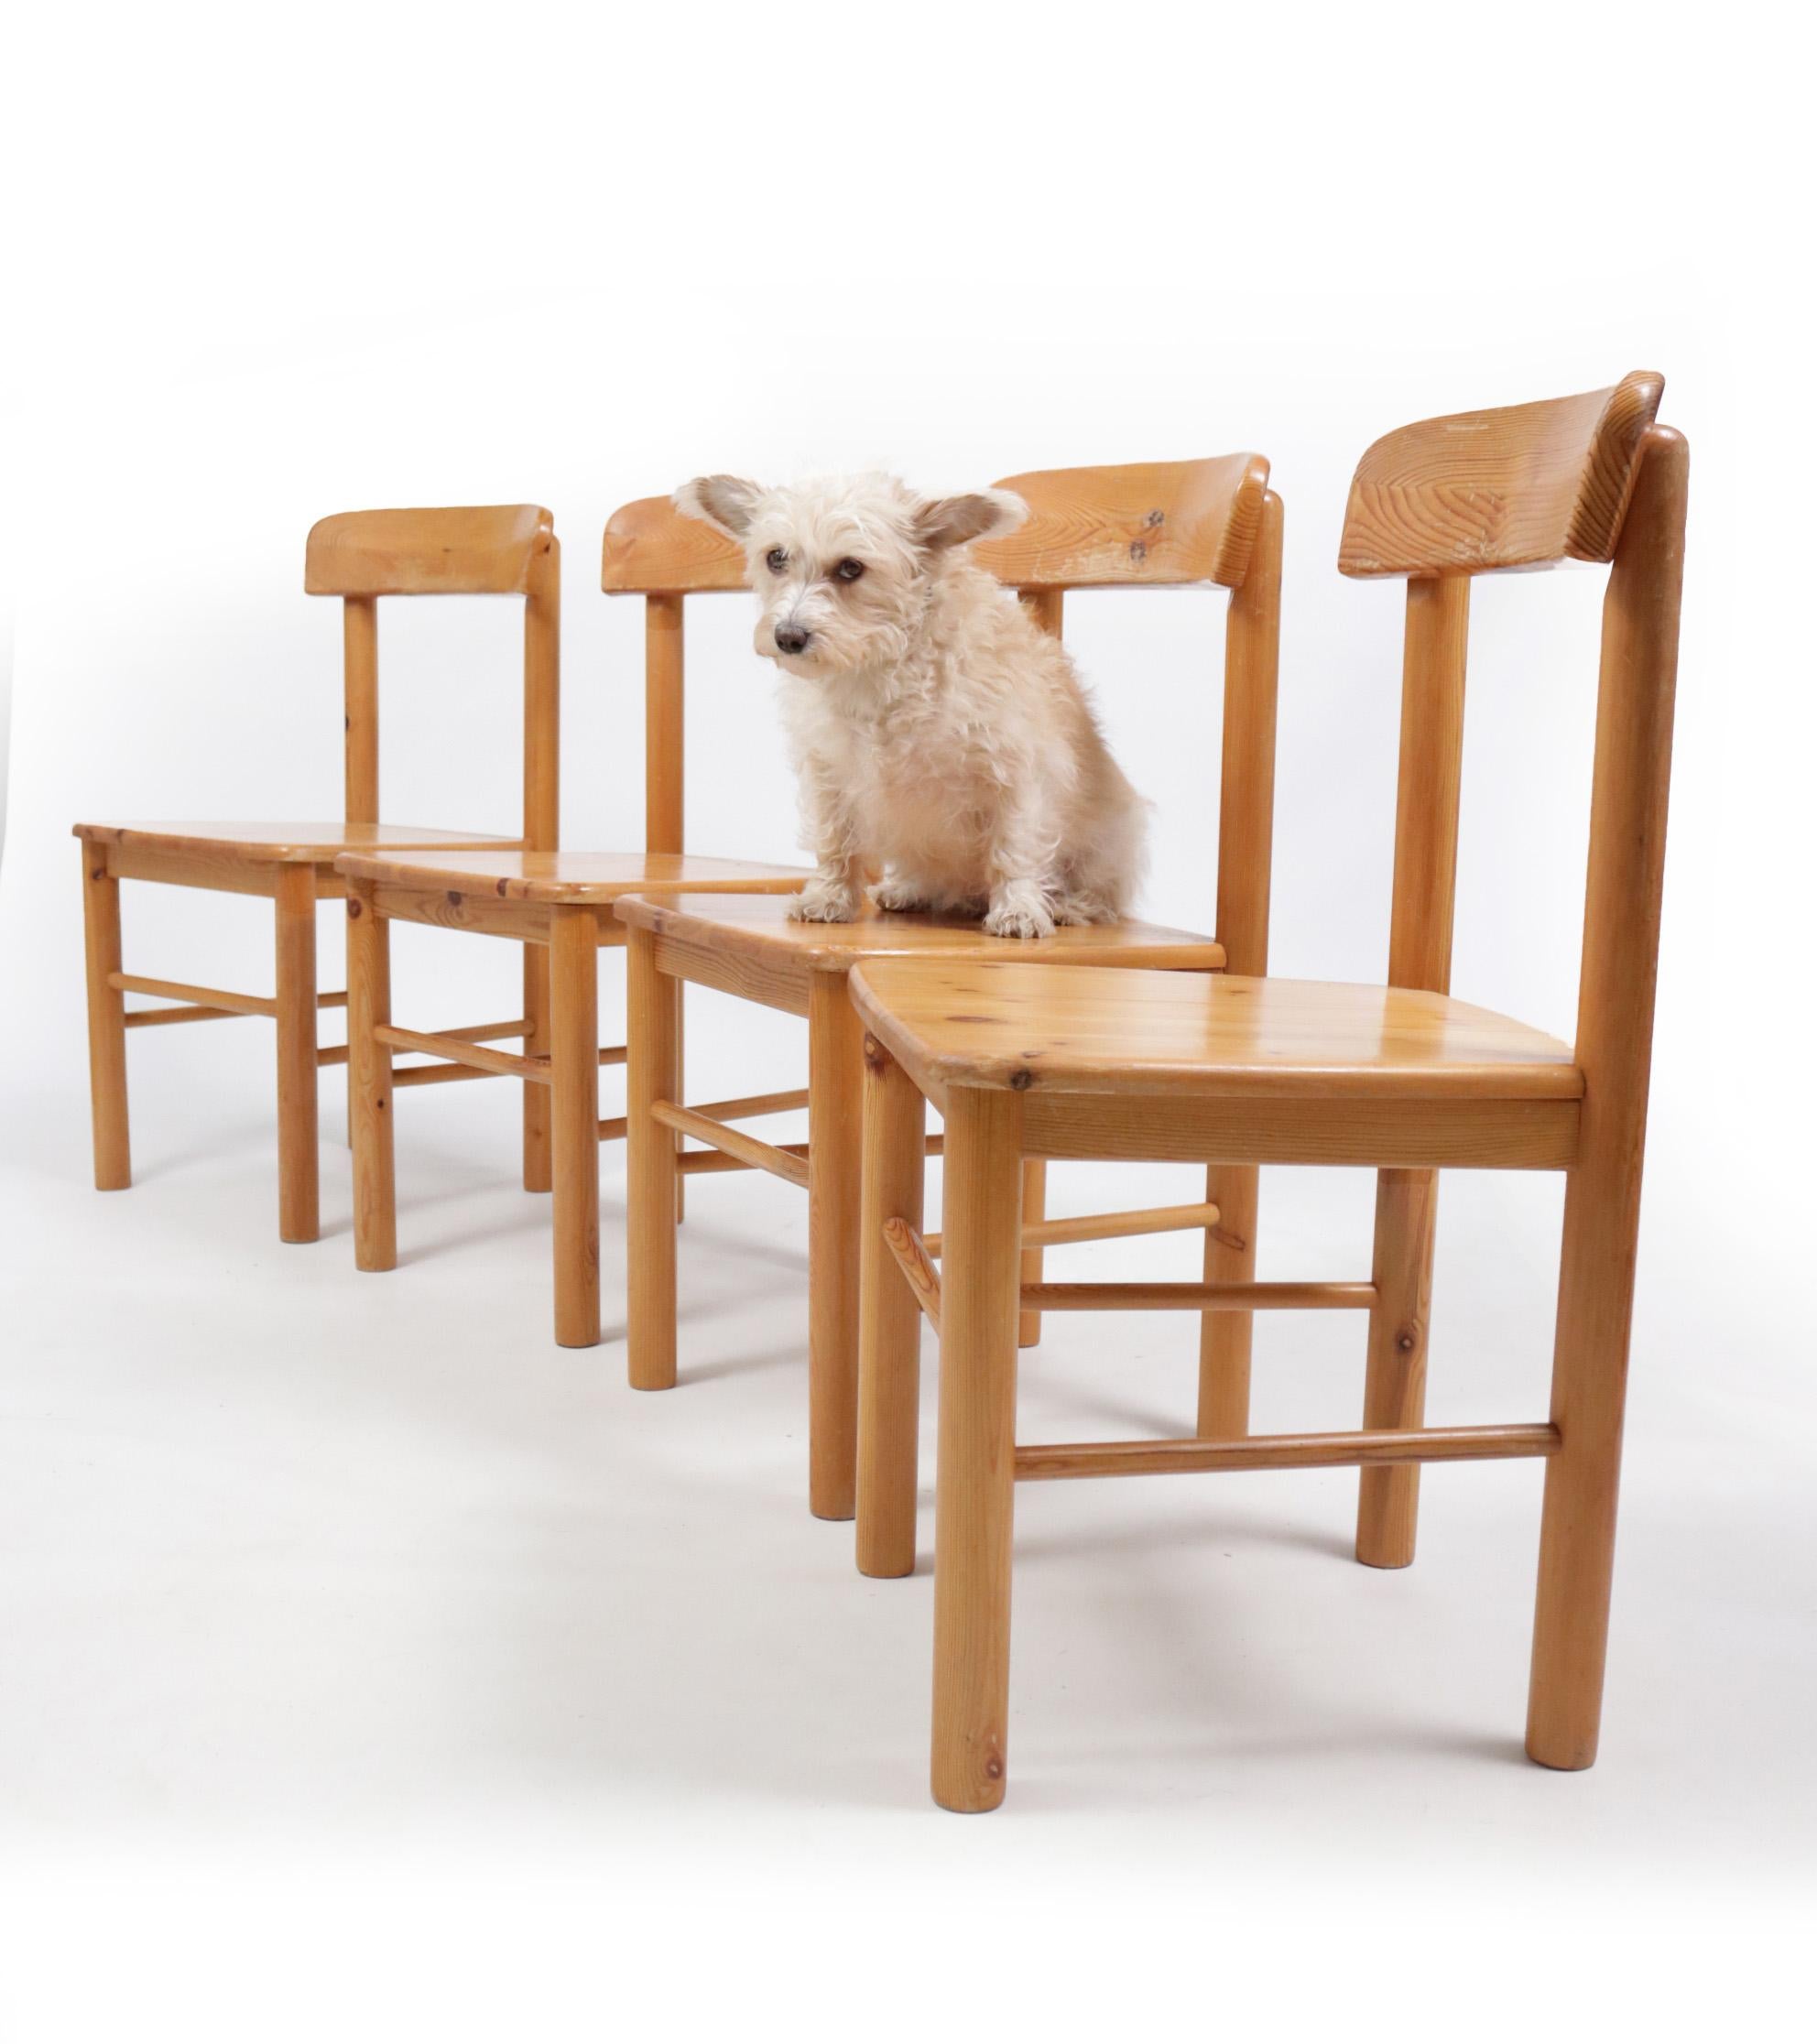 4 modernistische Stühle aus Kiefernholz, die nach dem Vorbild der von Rainer Daumiller für Hirtshals Saavaerk entworfenen Stühle hergestellt wurden.
Wir haben nicht genau diese Version gefunden, so für jetzt sprechen in der Art und Weise